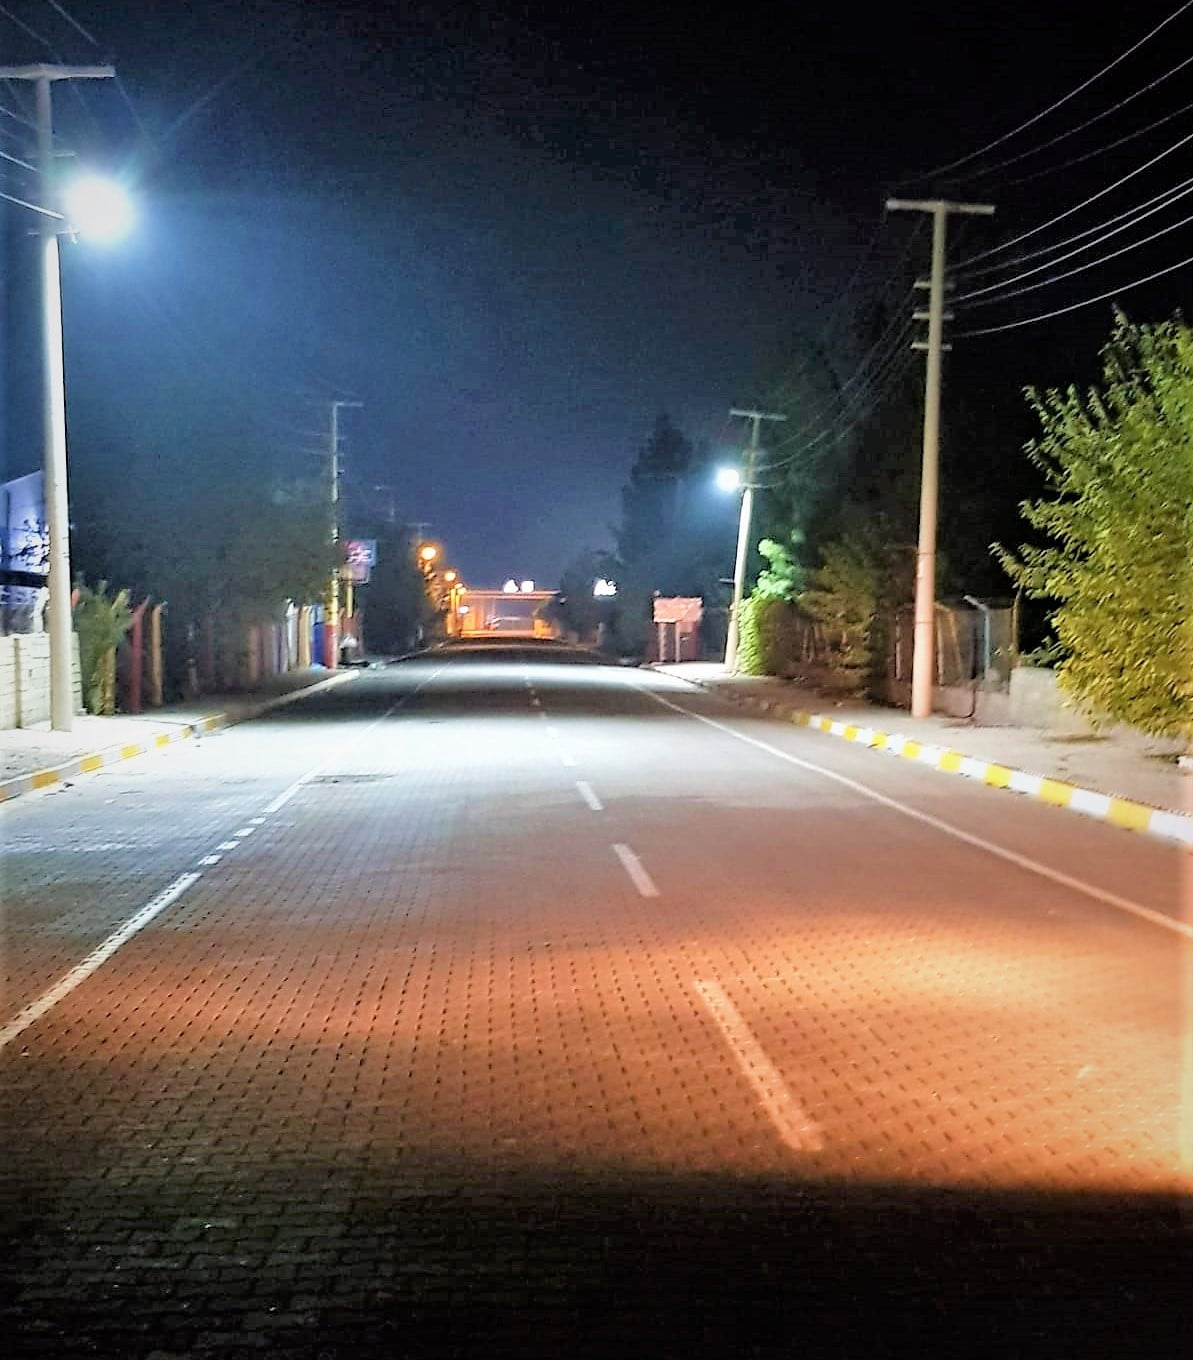 OSB'deki cadde ve sokaklar aydınlatılıyor